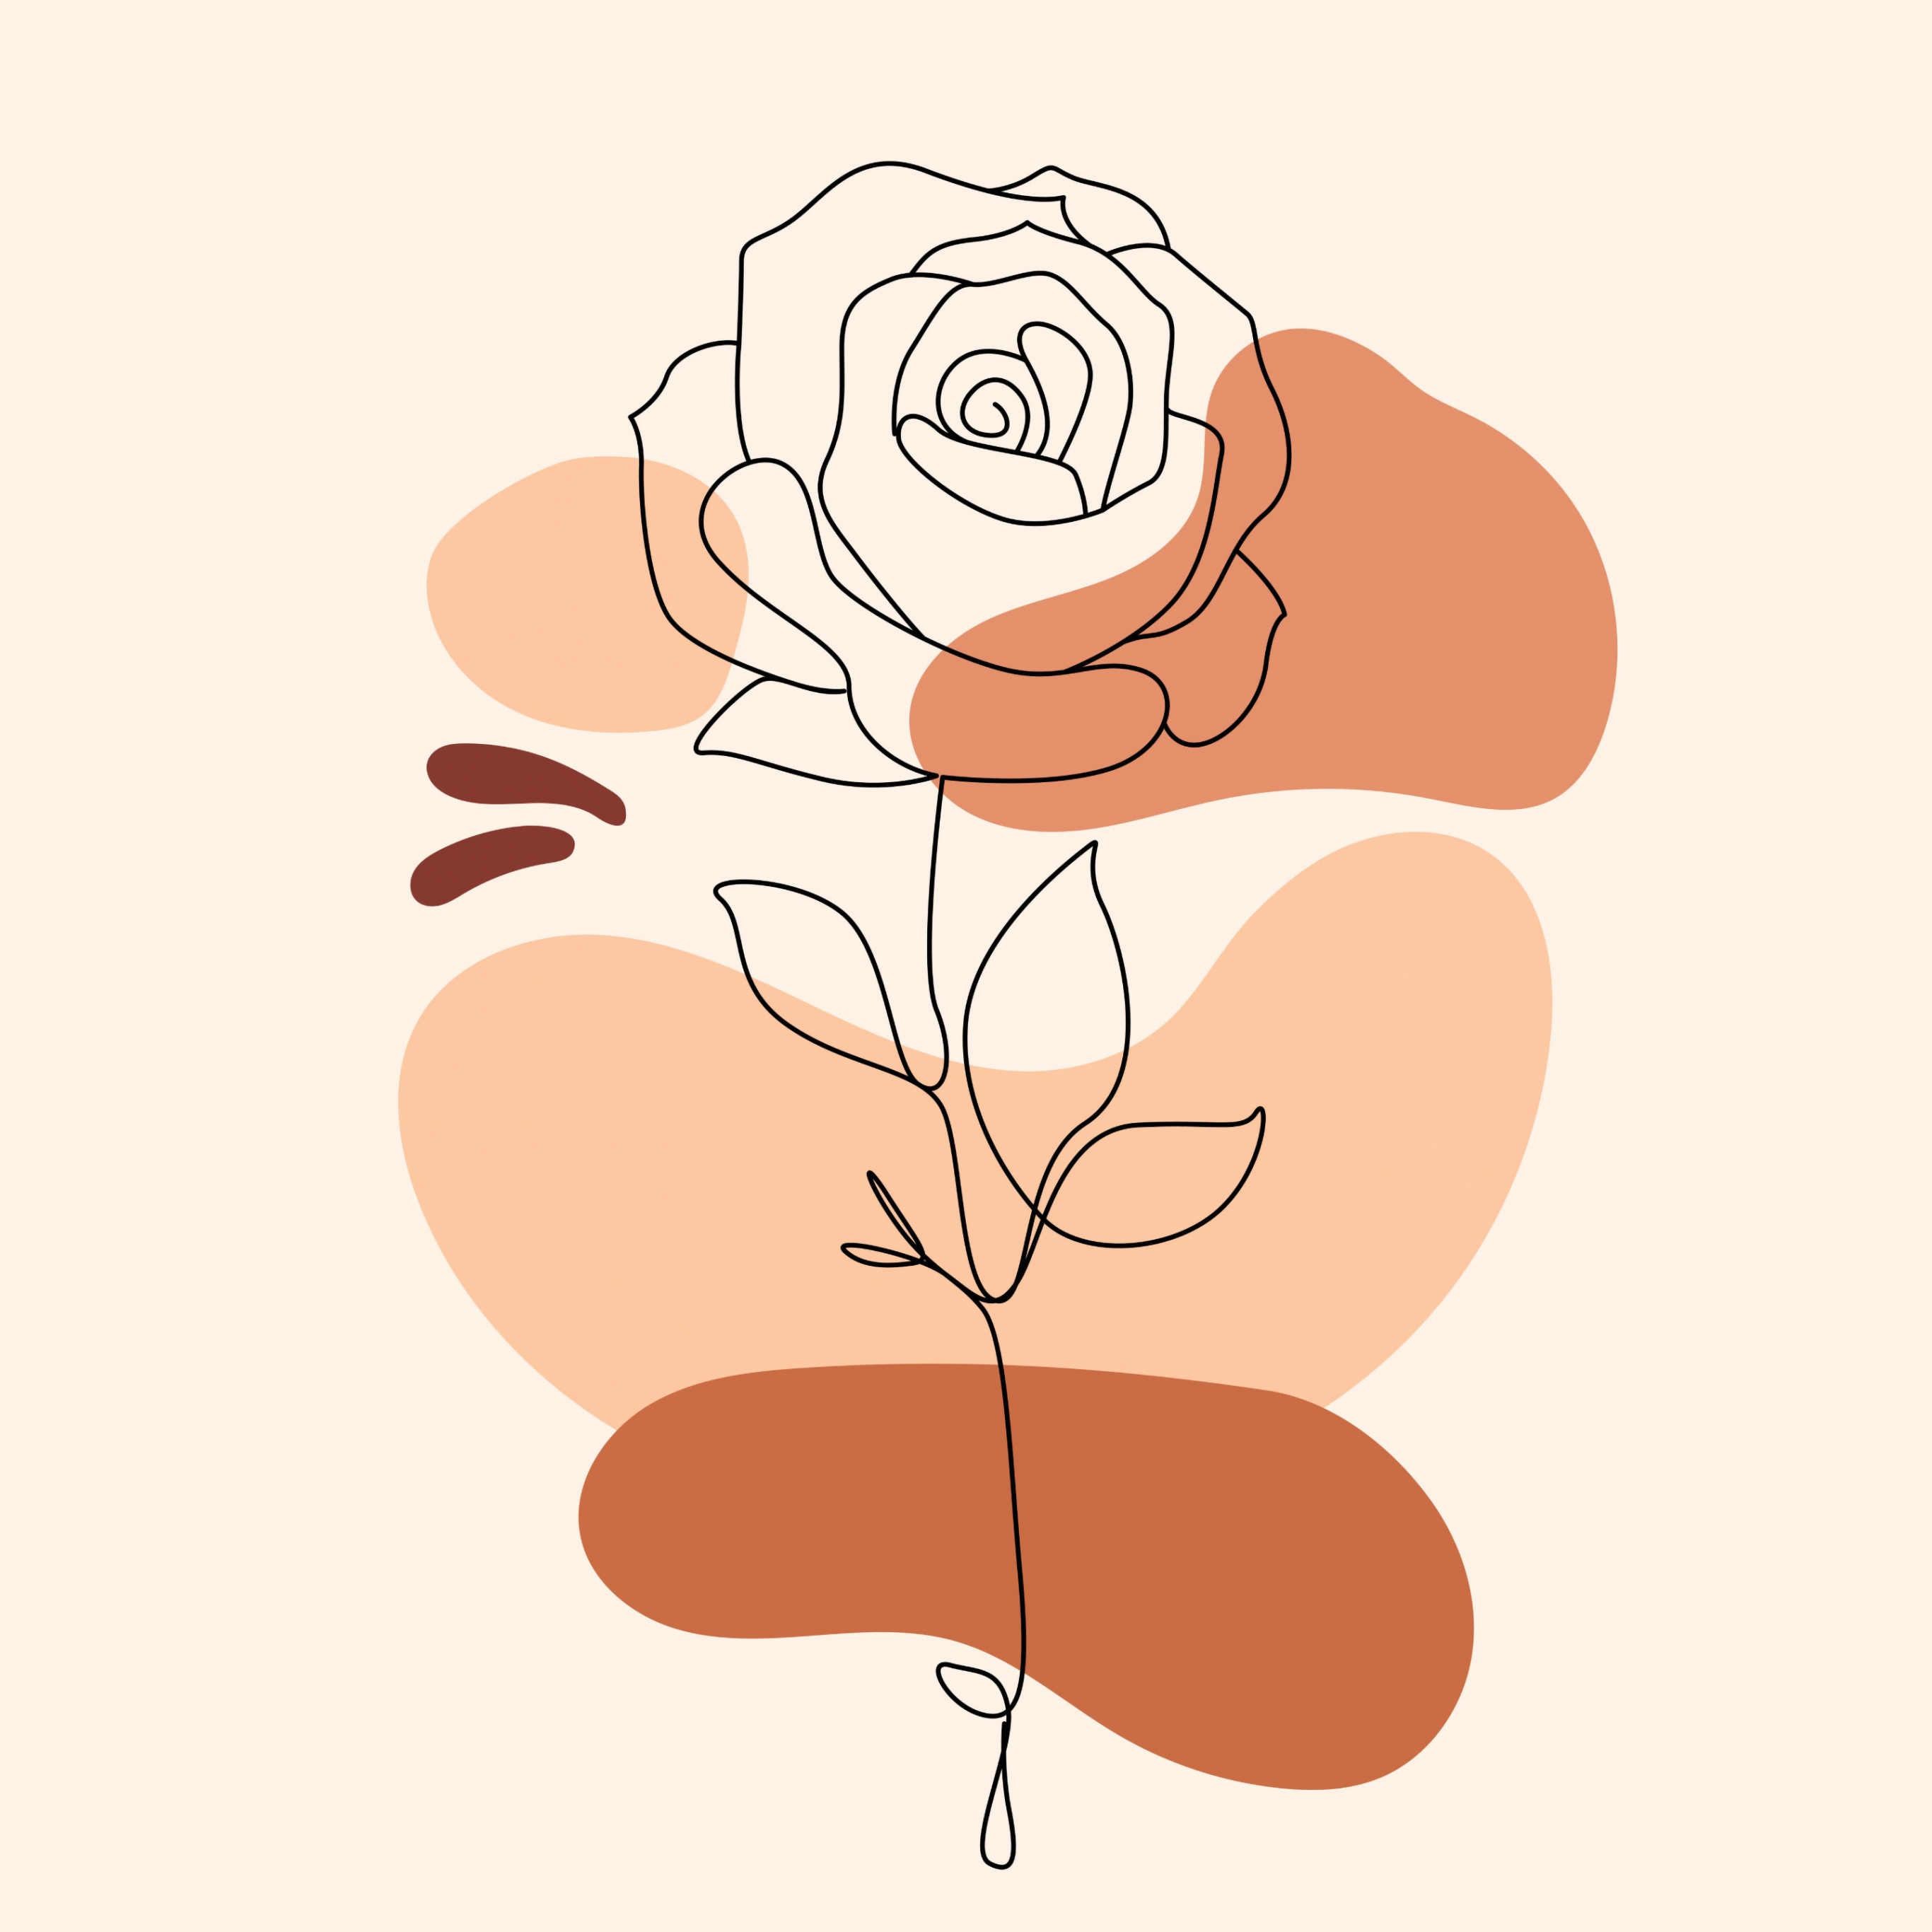 Free Flower Boho Wallpaper  Download in Illustrator EPS SVG JPG PNG   Templatenet